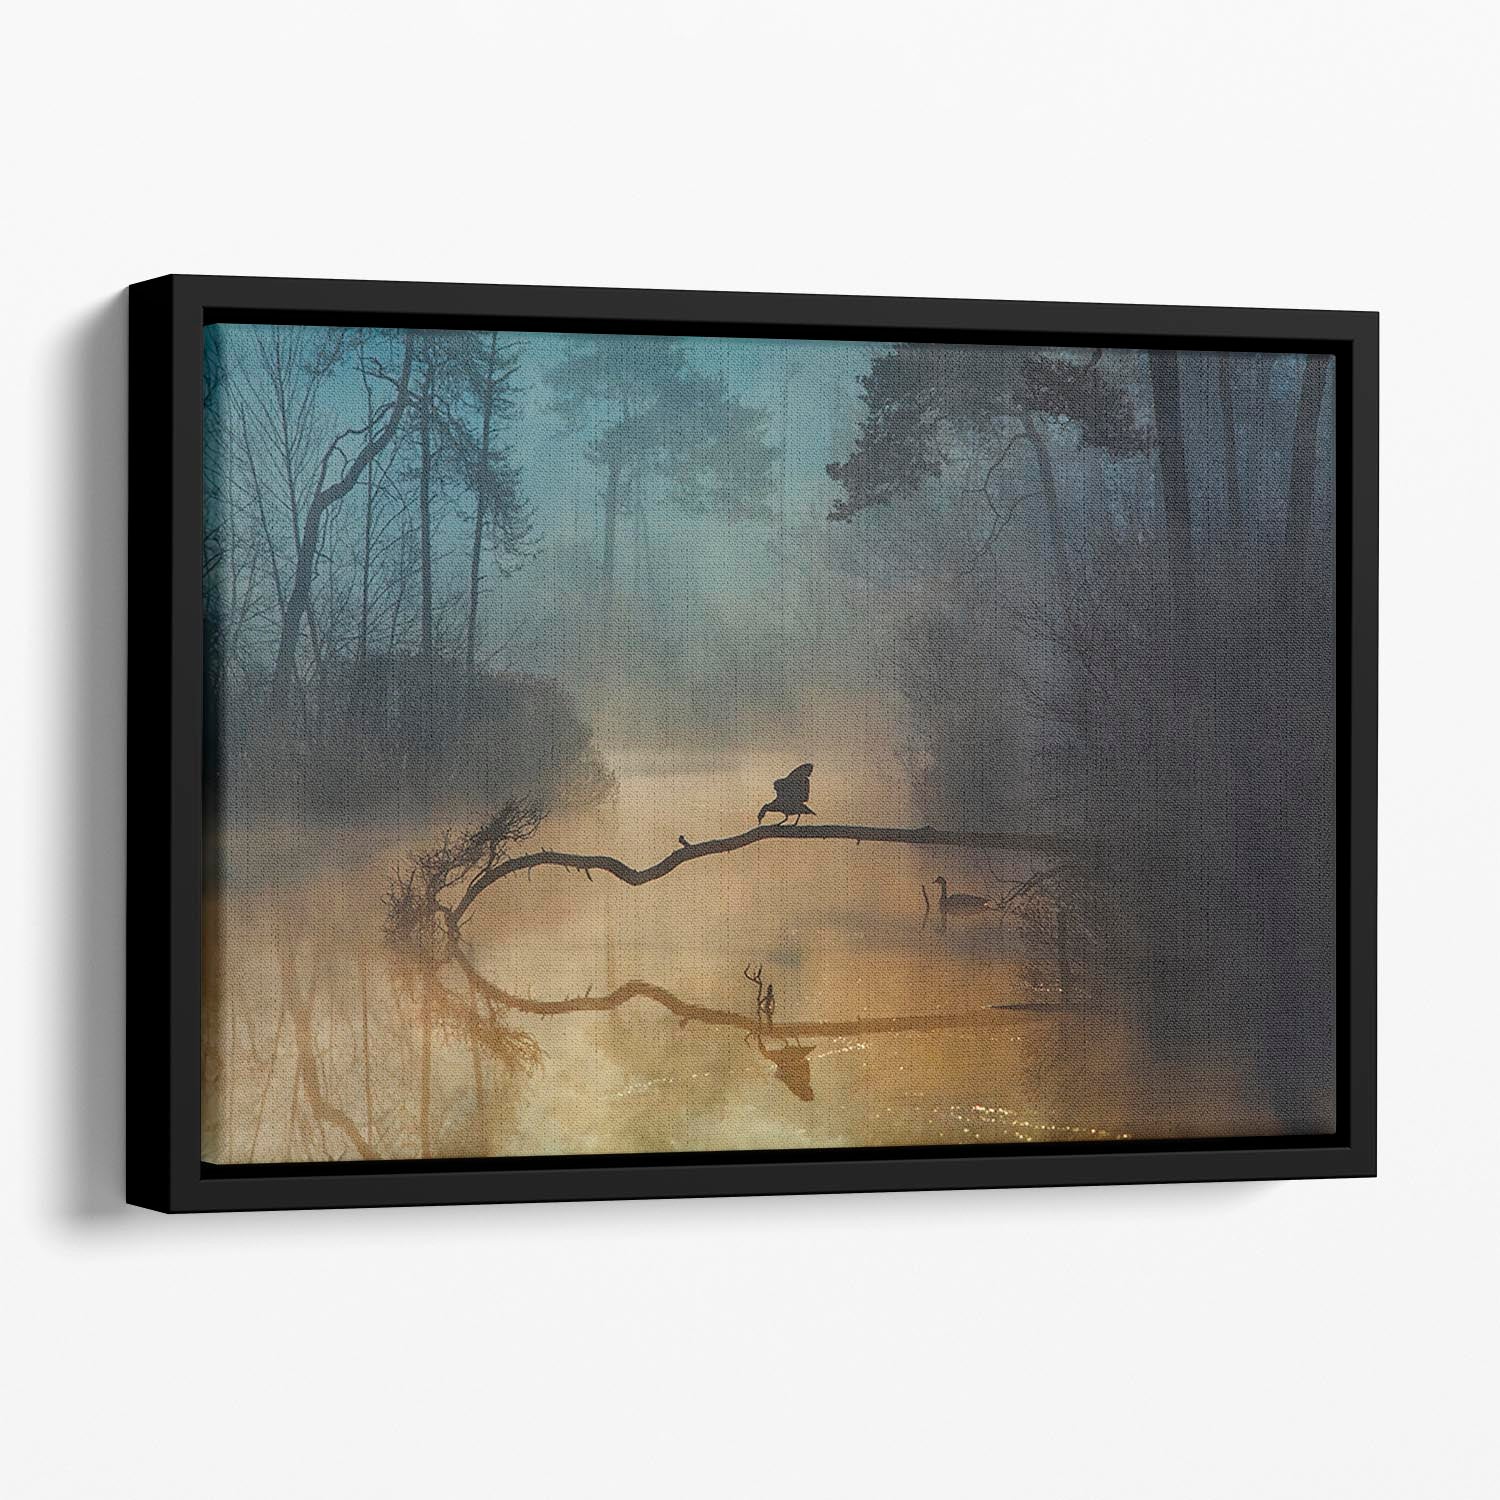 Blue Hour Floating Framed Canvas - Canvas Art Rocks - 1